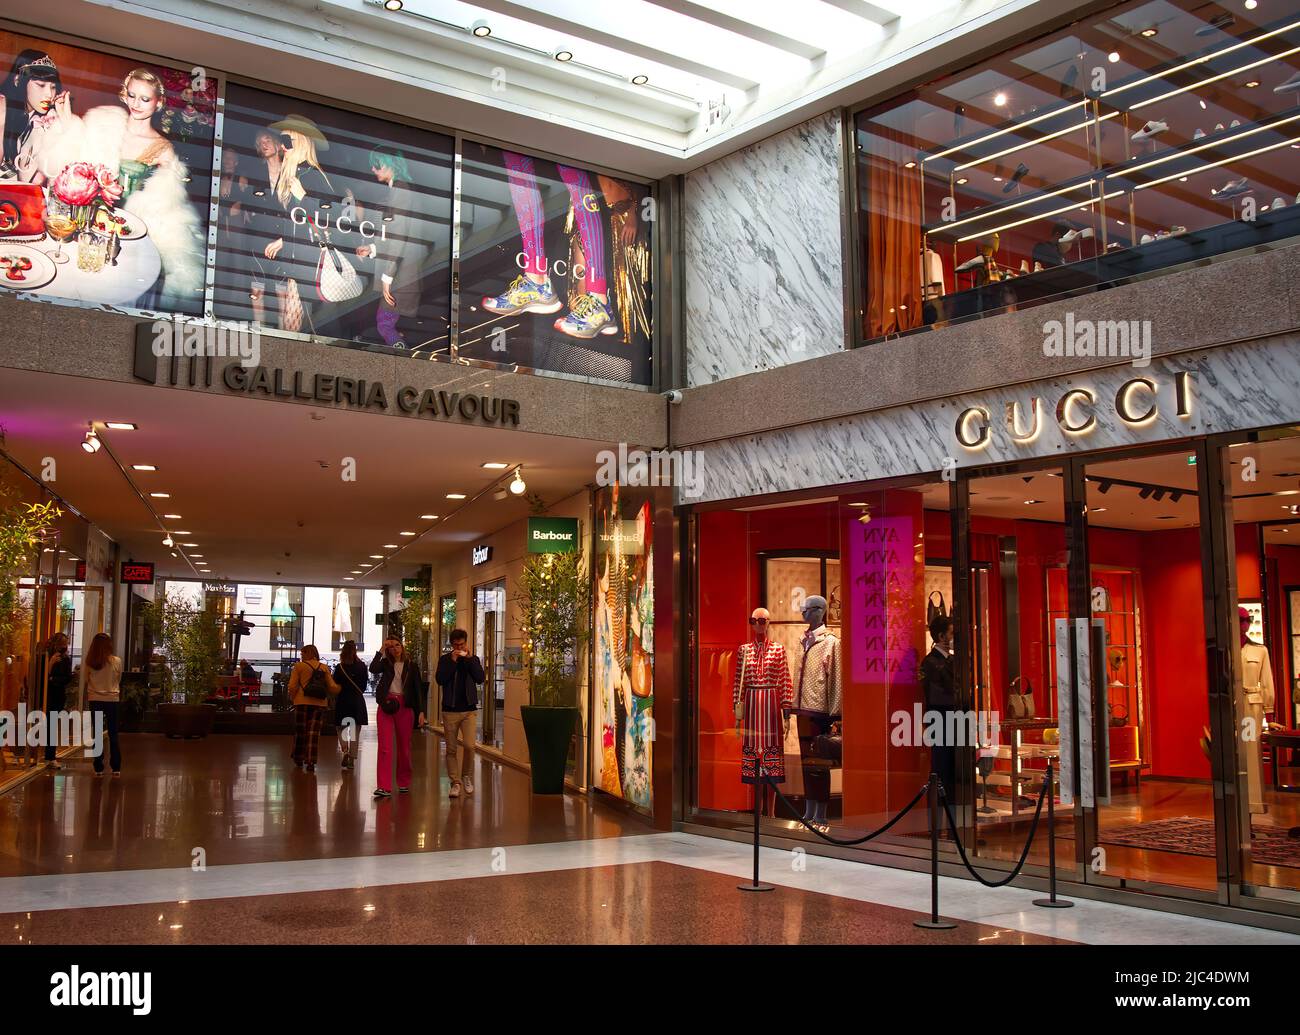 Esterno del negozio Gucci nella Galleria Cavour, famoso centro commerciale  di lusso a Bologna. Italia Foto stock - Alamy